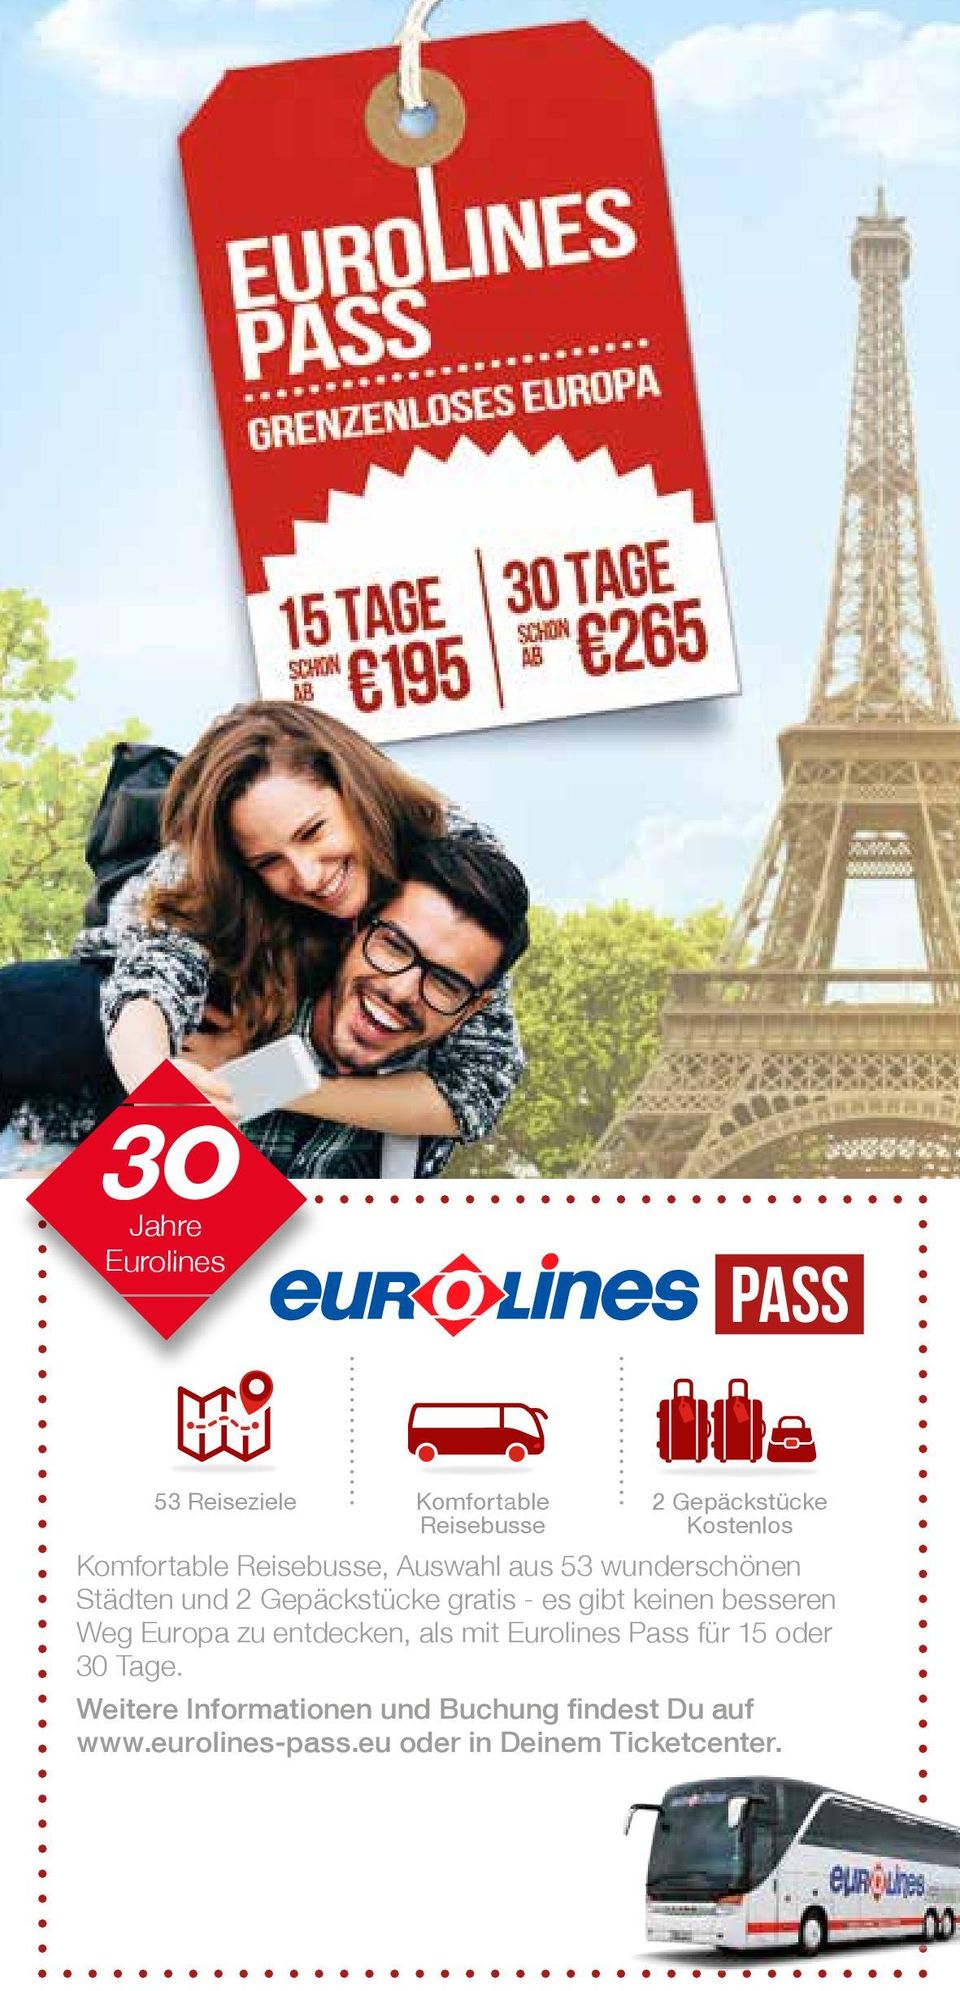 gibt keinen besseren Weg Europa zu entdecken, als mit Eurolines Pass für 15 oder 30 Tage.